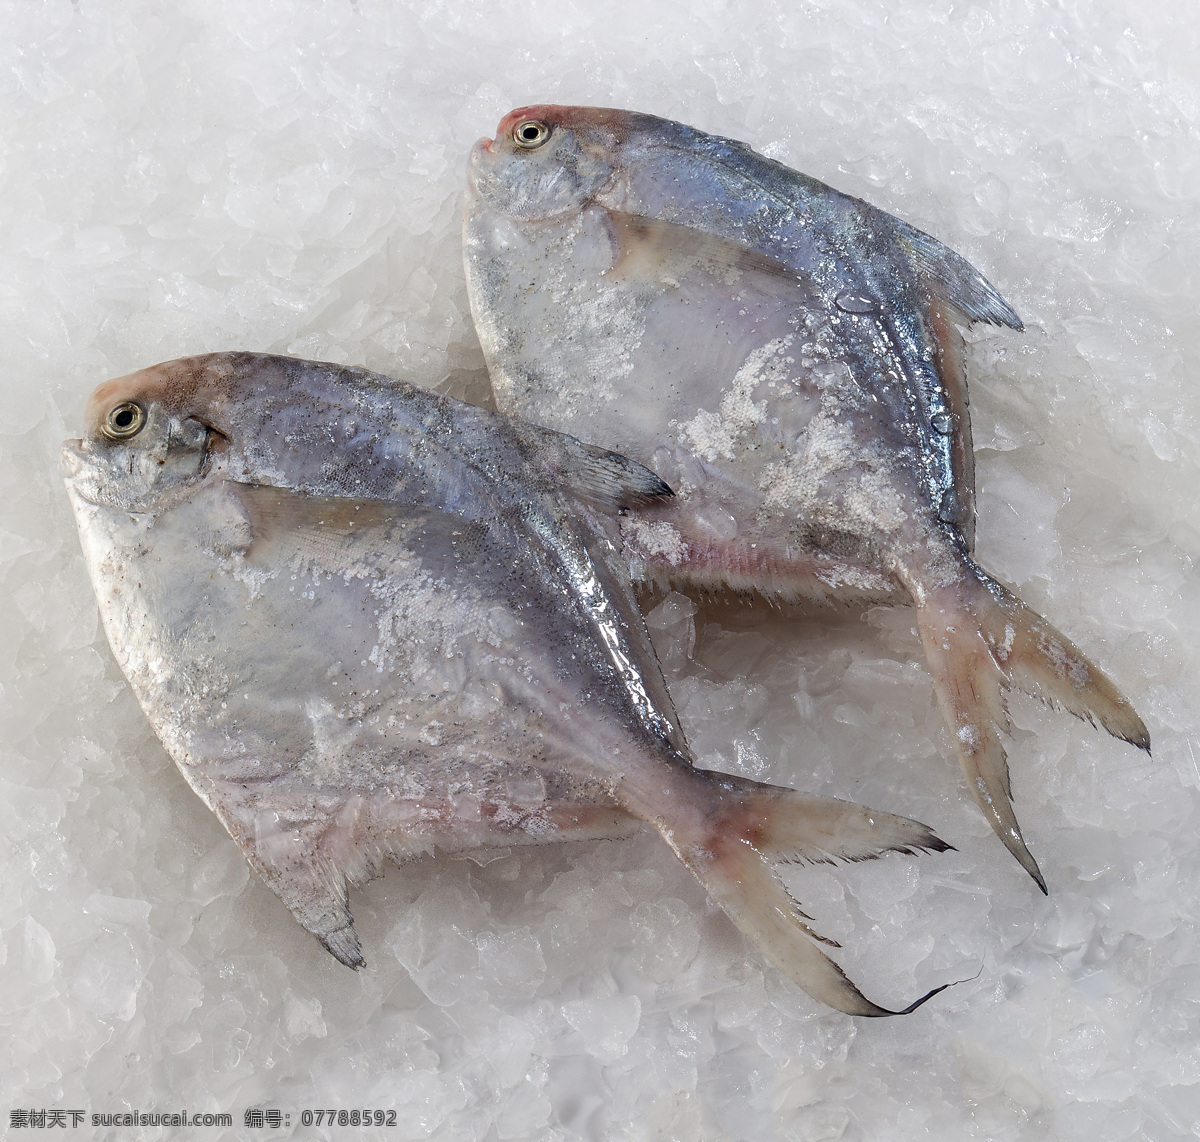 宁波海鲜 海鲜 鱼 银鲳鱼 海鱼 东海海鲜 冰鲜 盒马生鲜 生鲜 美食菜肴 生物世界 鱼类